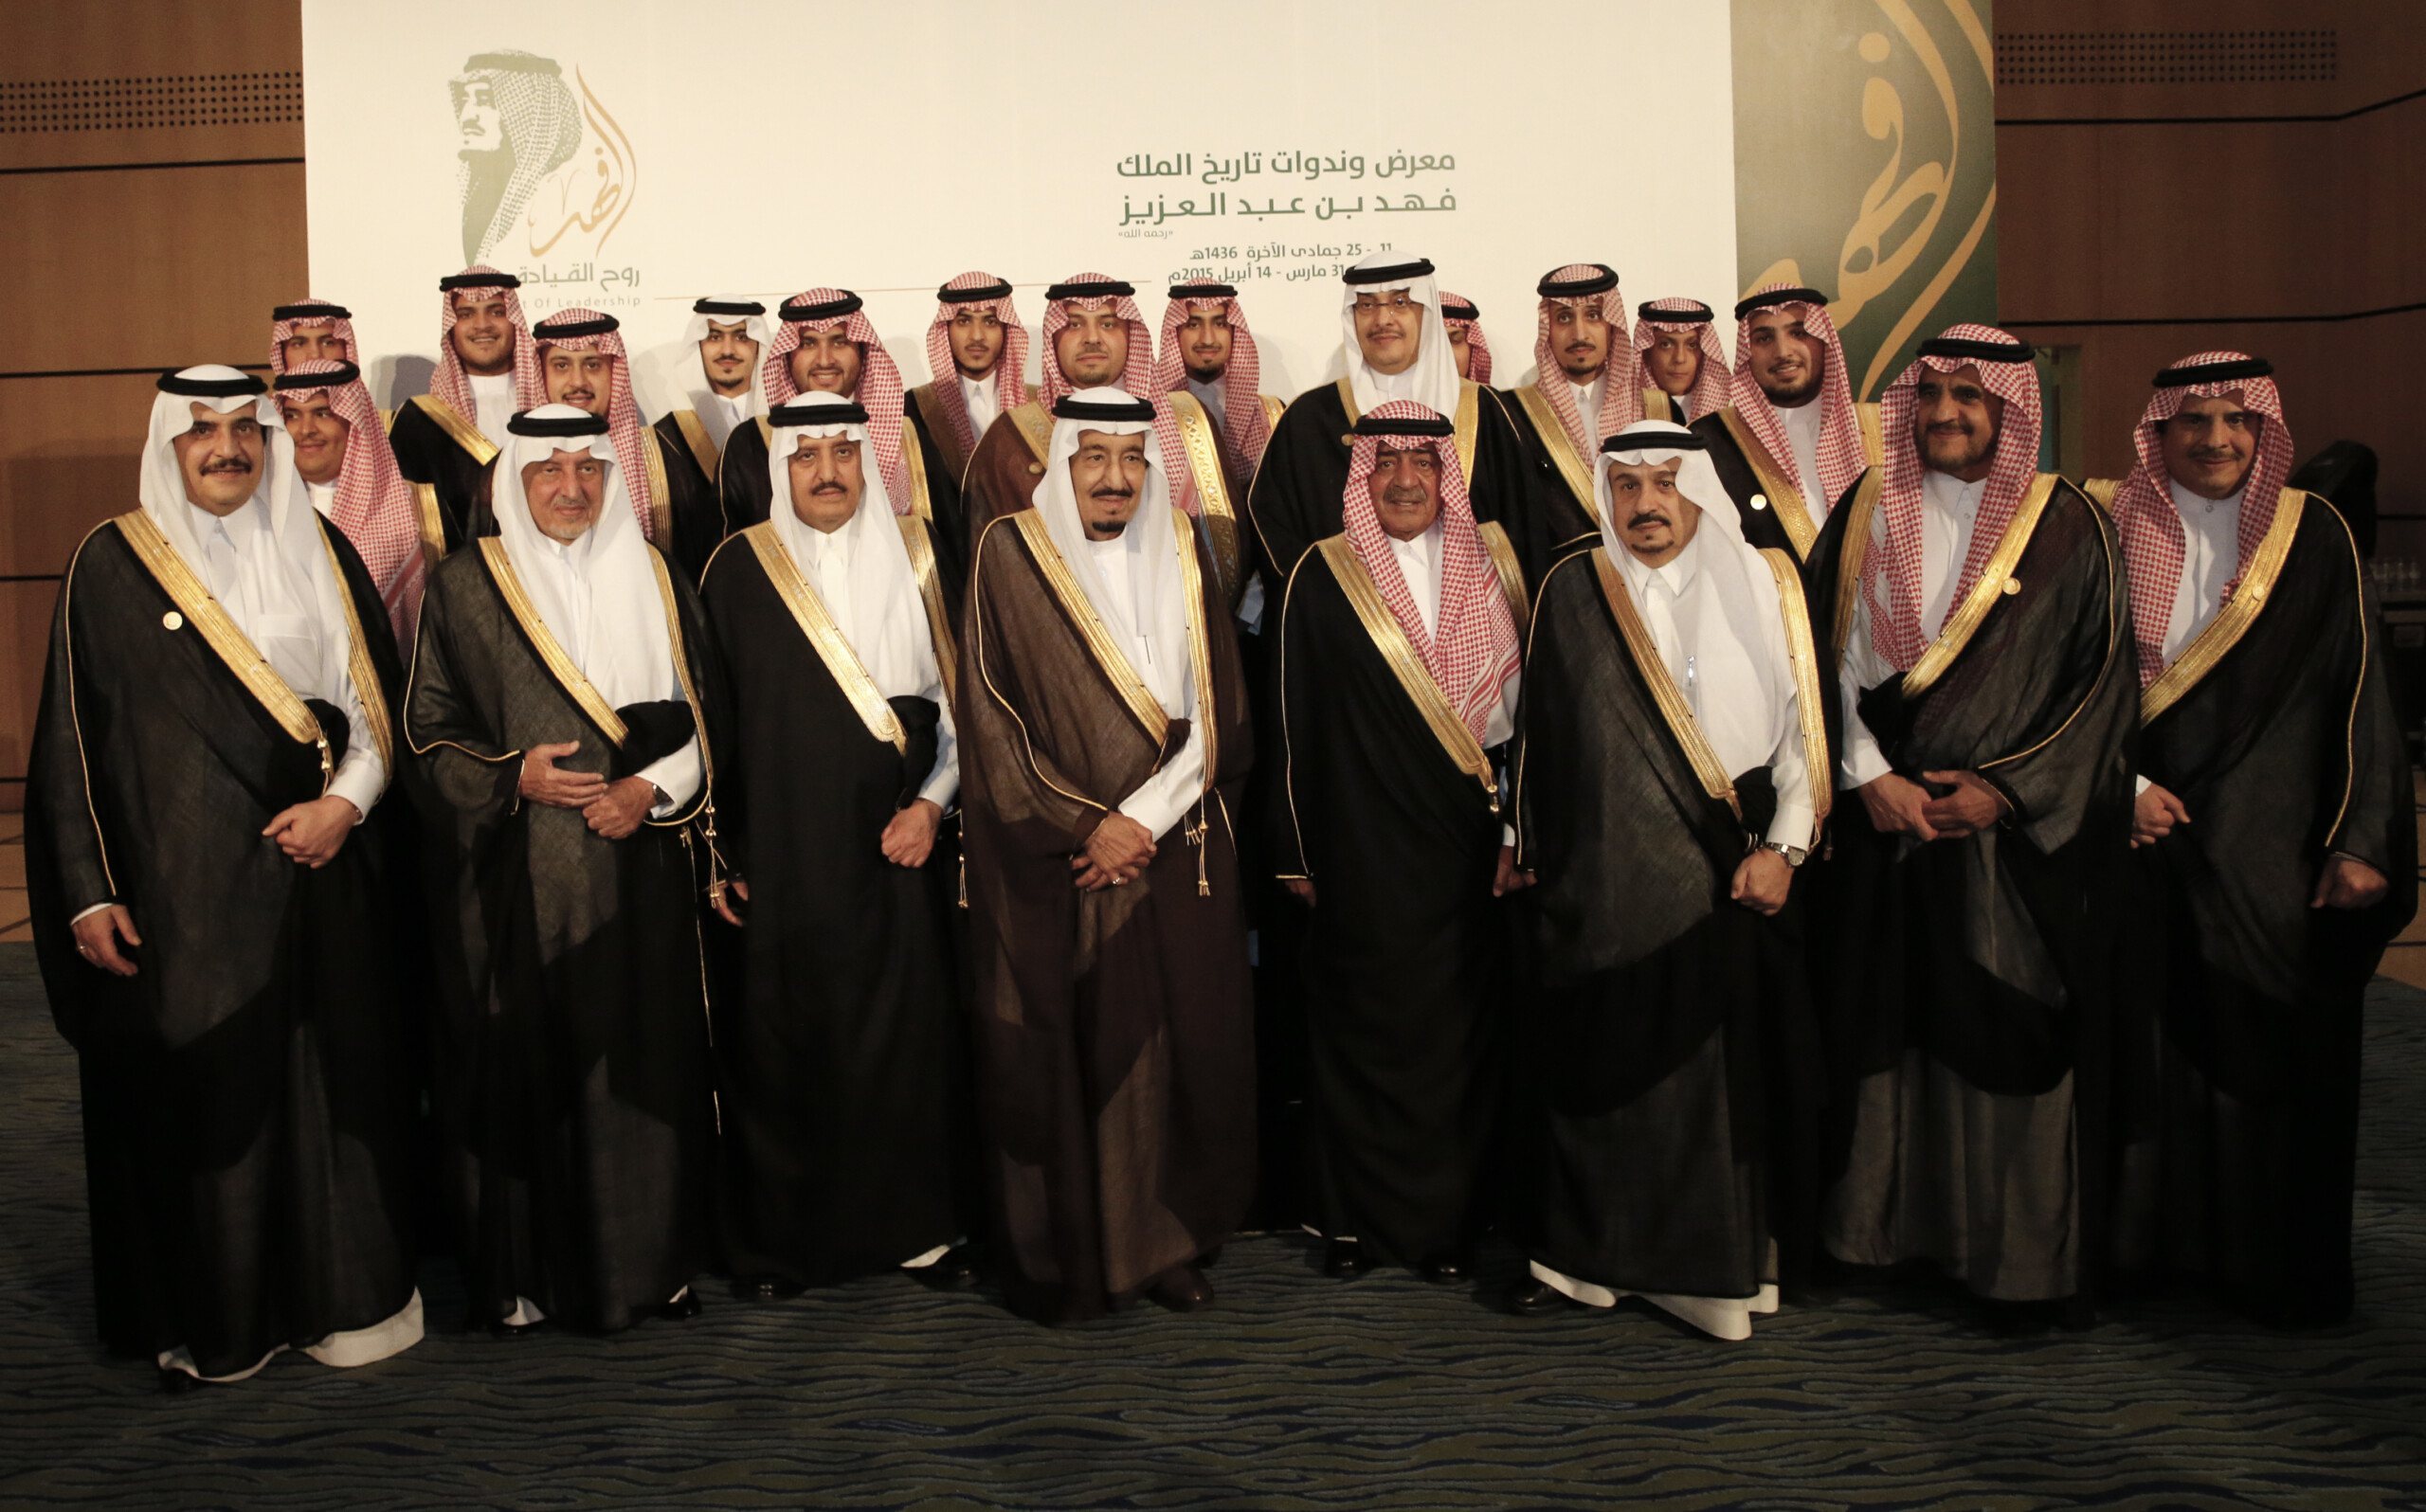 افتتاح معرض الفهد روح القيادة في الرياض